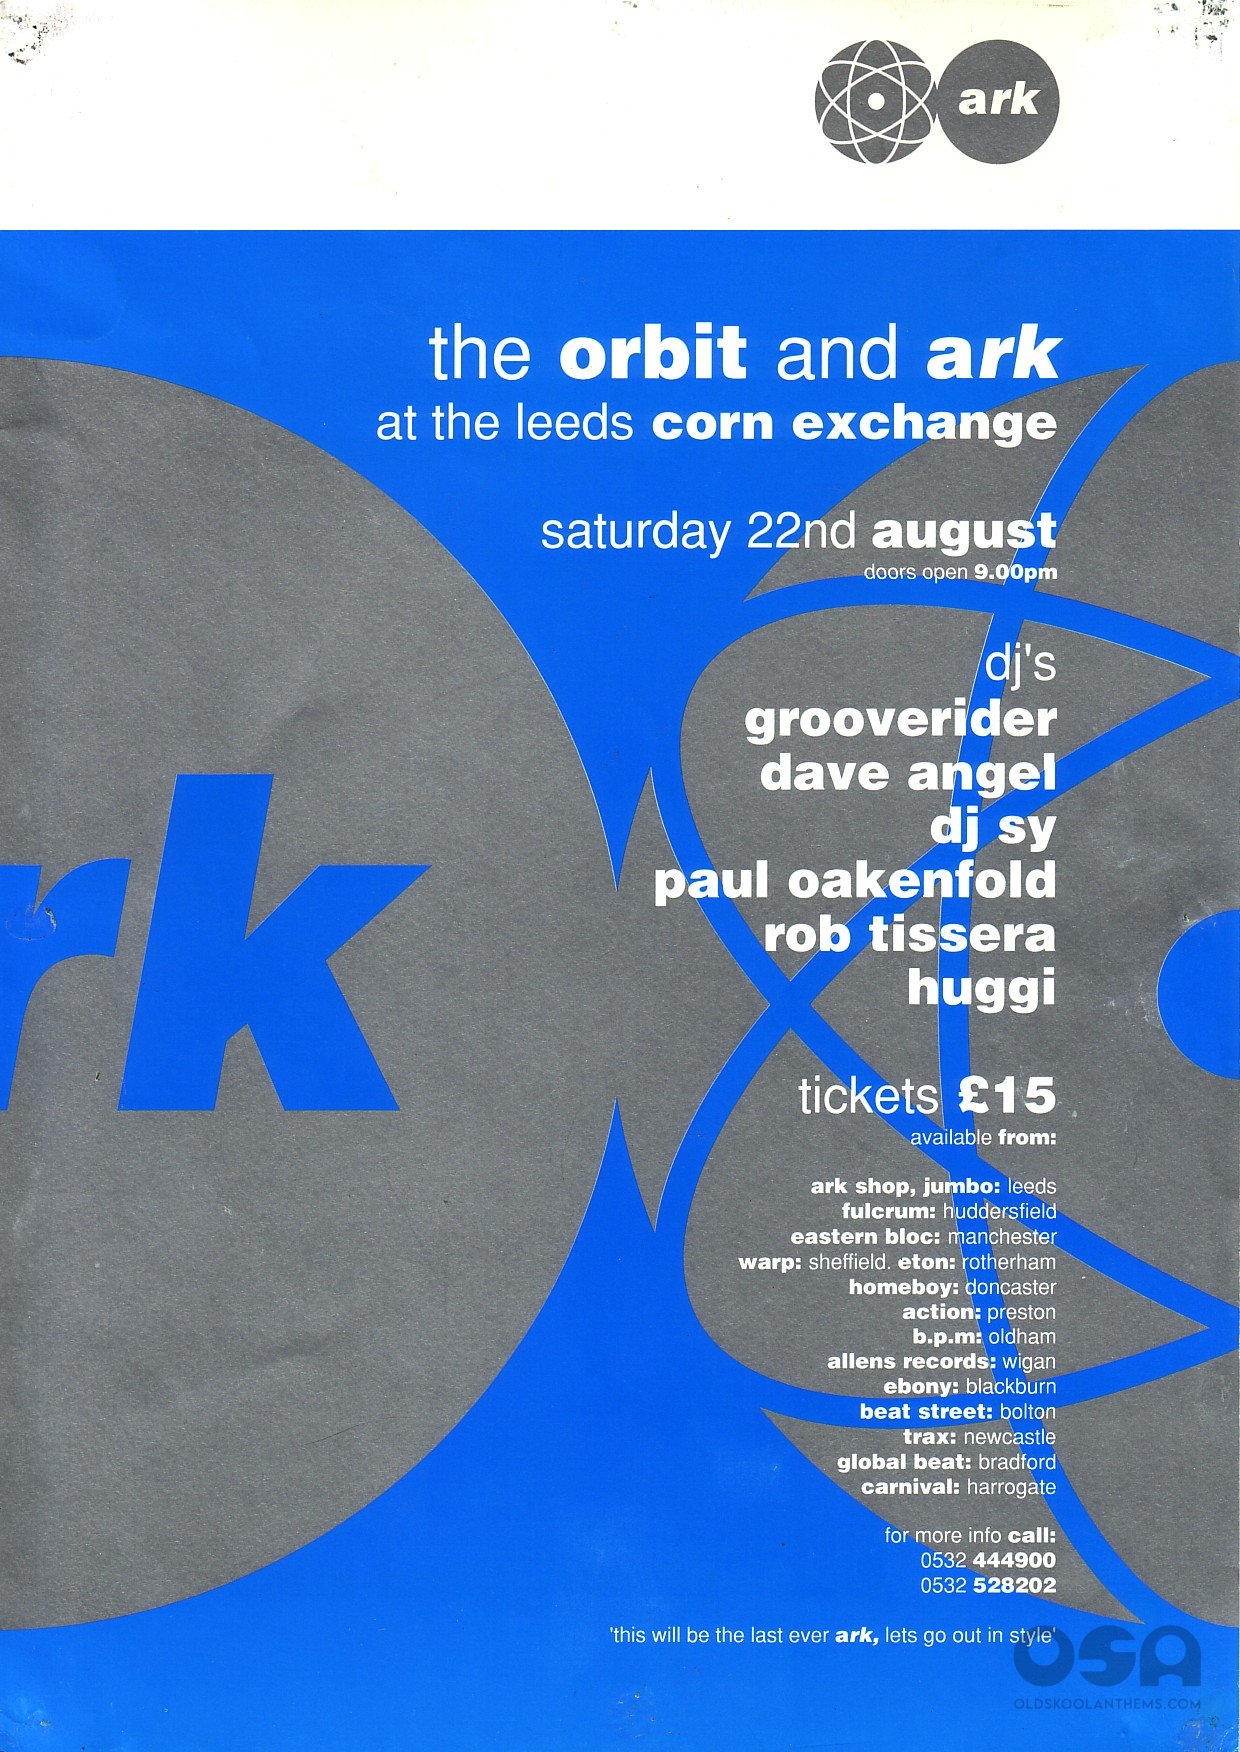 1_Ark___Orbit_Saturday_22nd_Aug_1992___Leeds_Corn_Exchange_rear_view.jpg